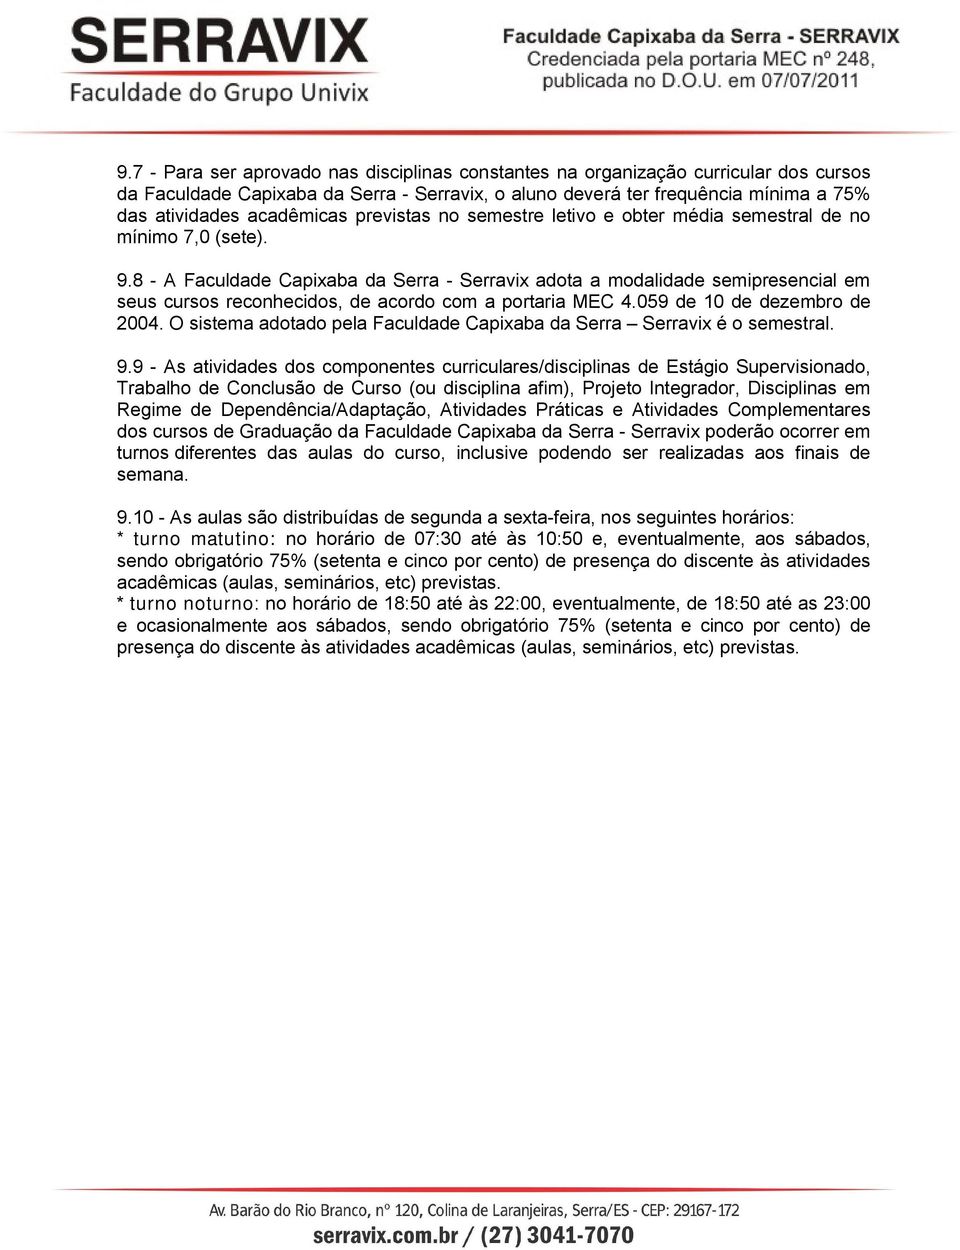 8 - A Faculdade Capixaba da Serra - Serravix adota a modalidade semipresencial em seus cursos reconhecidos, de acordo com a portaria MEC 4.059 de 10 de dezembro de 2004.